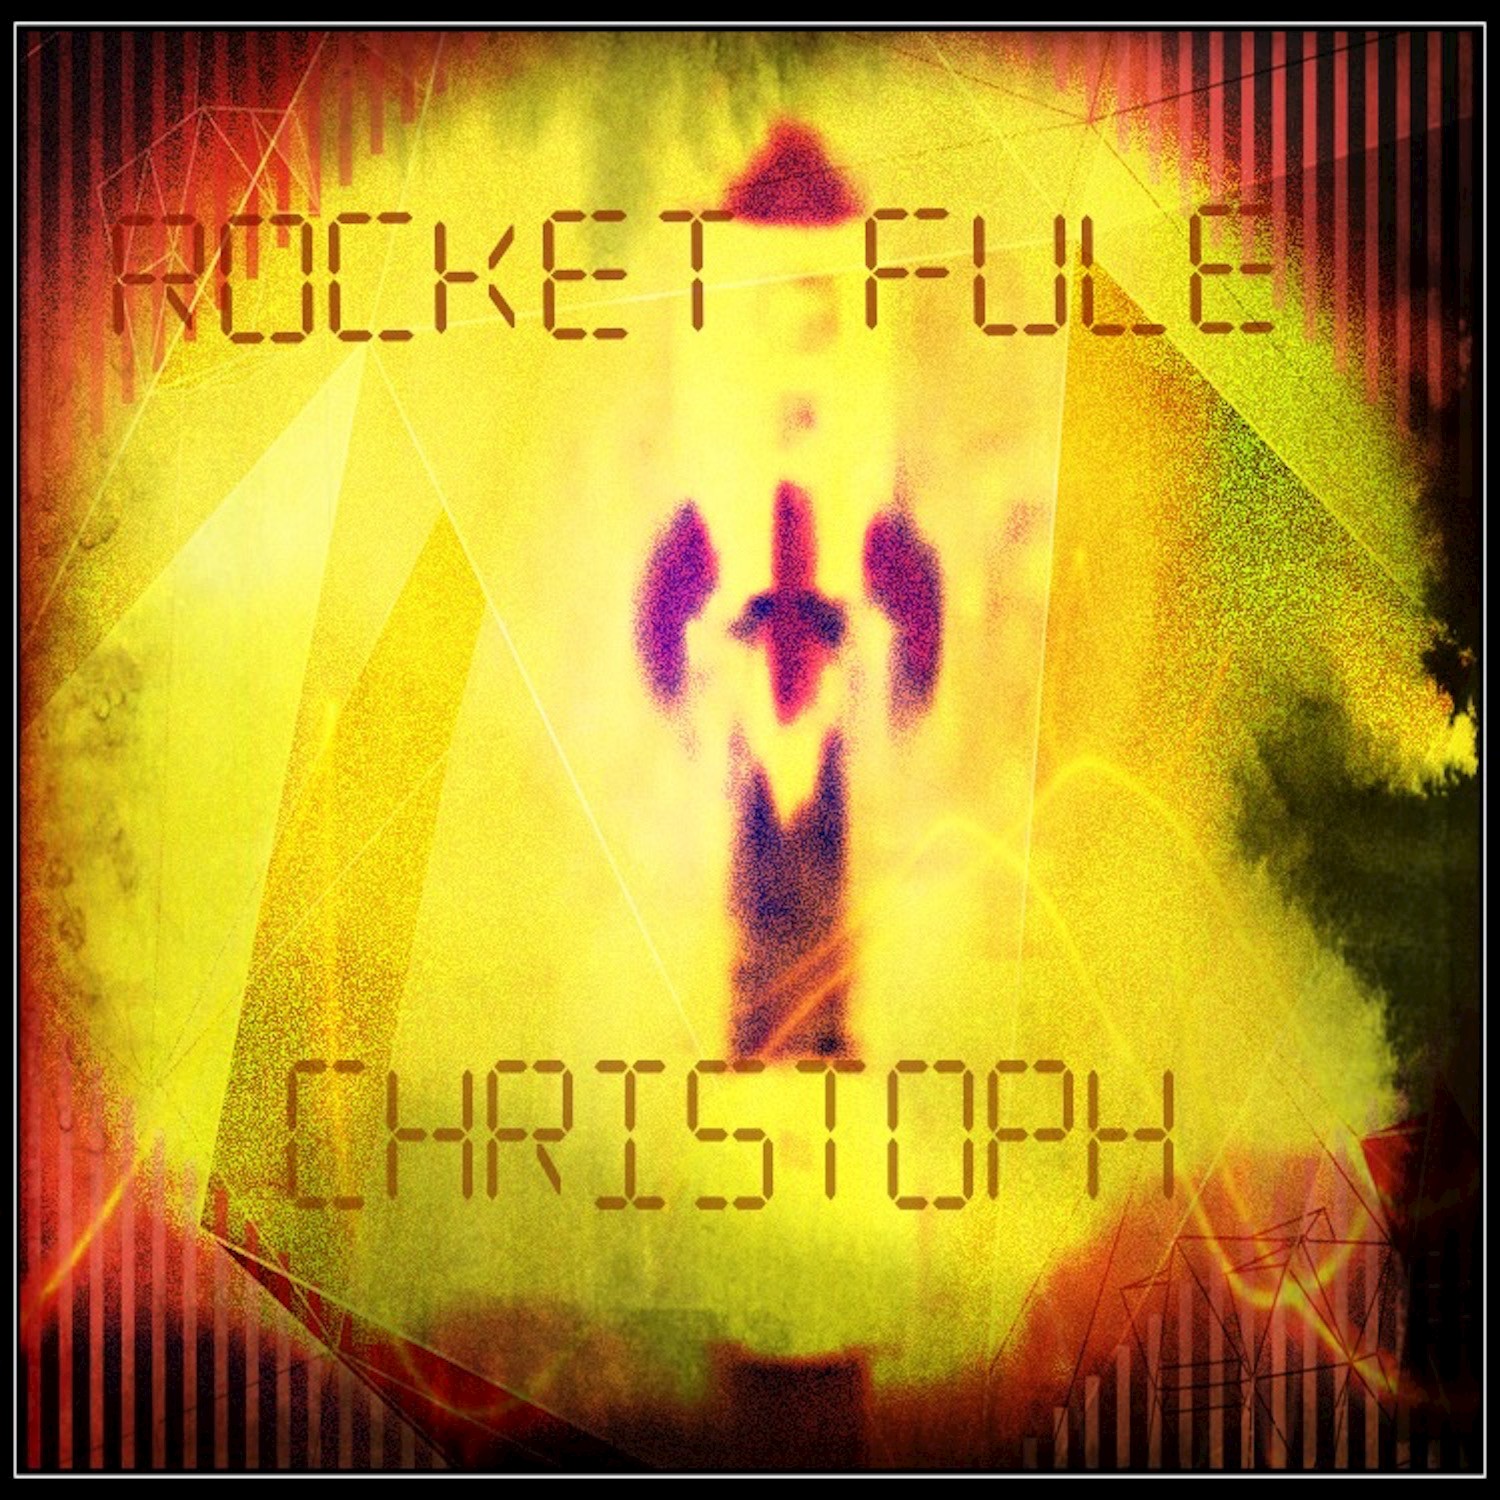 Rocket Fule